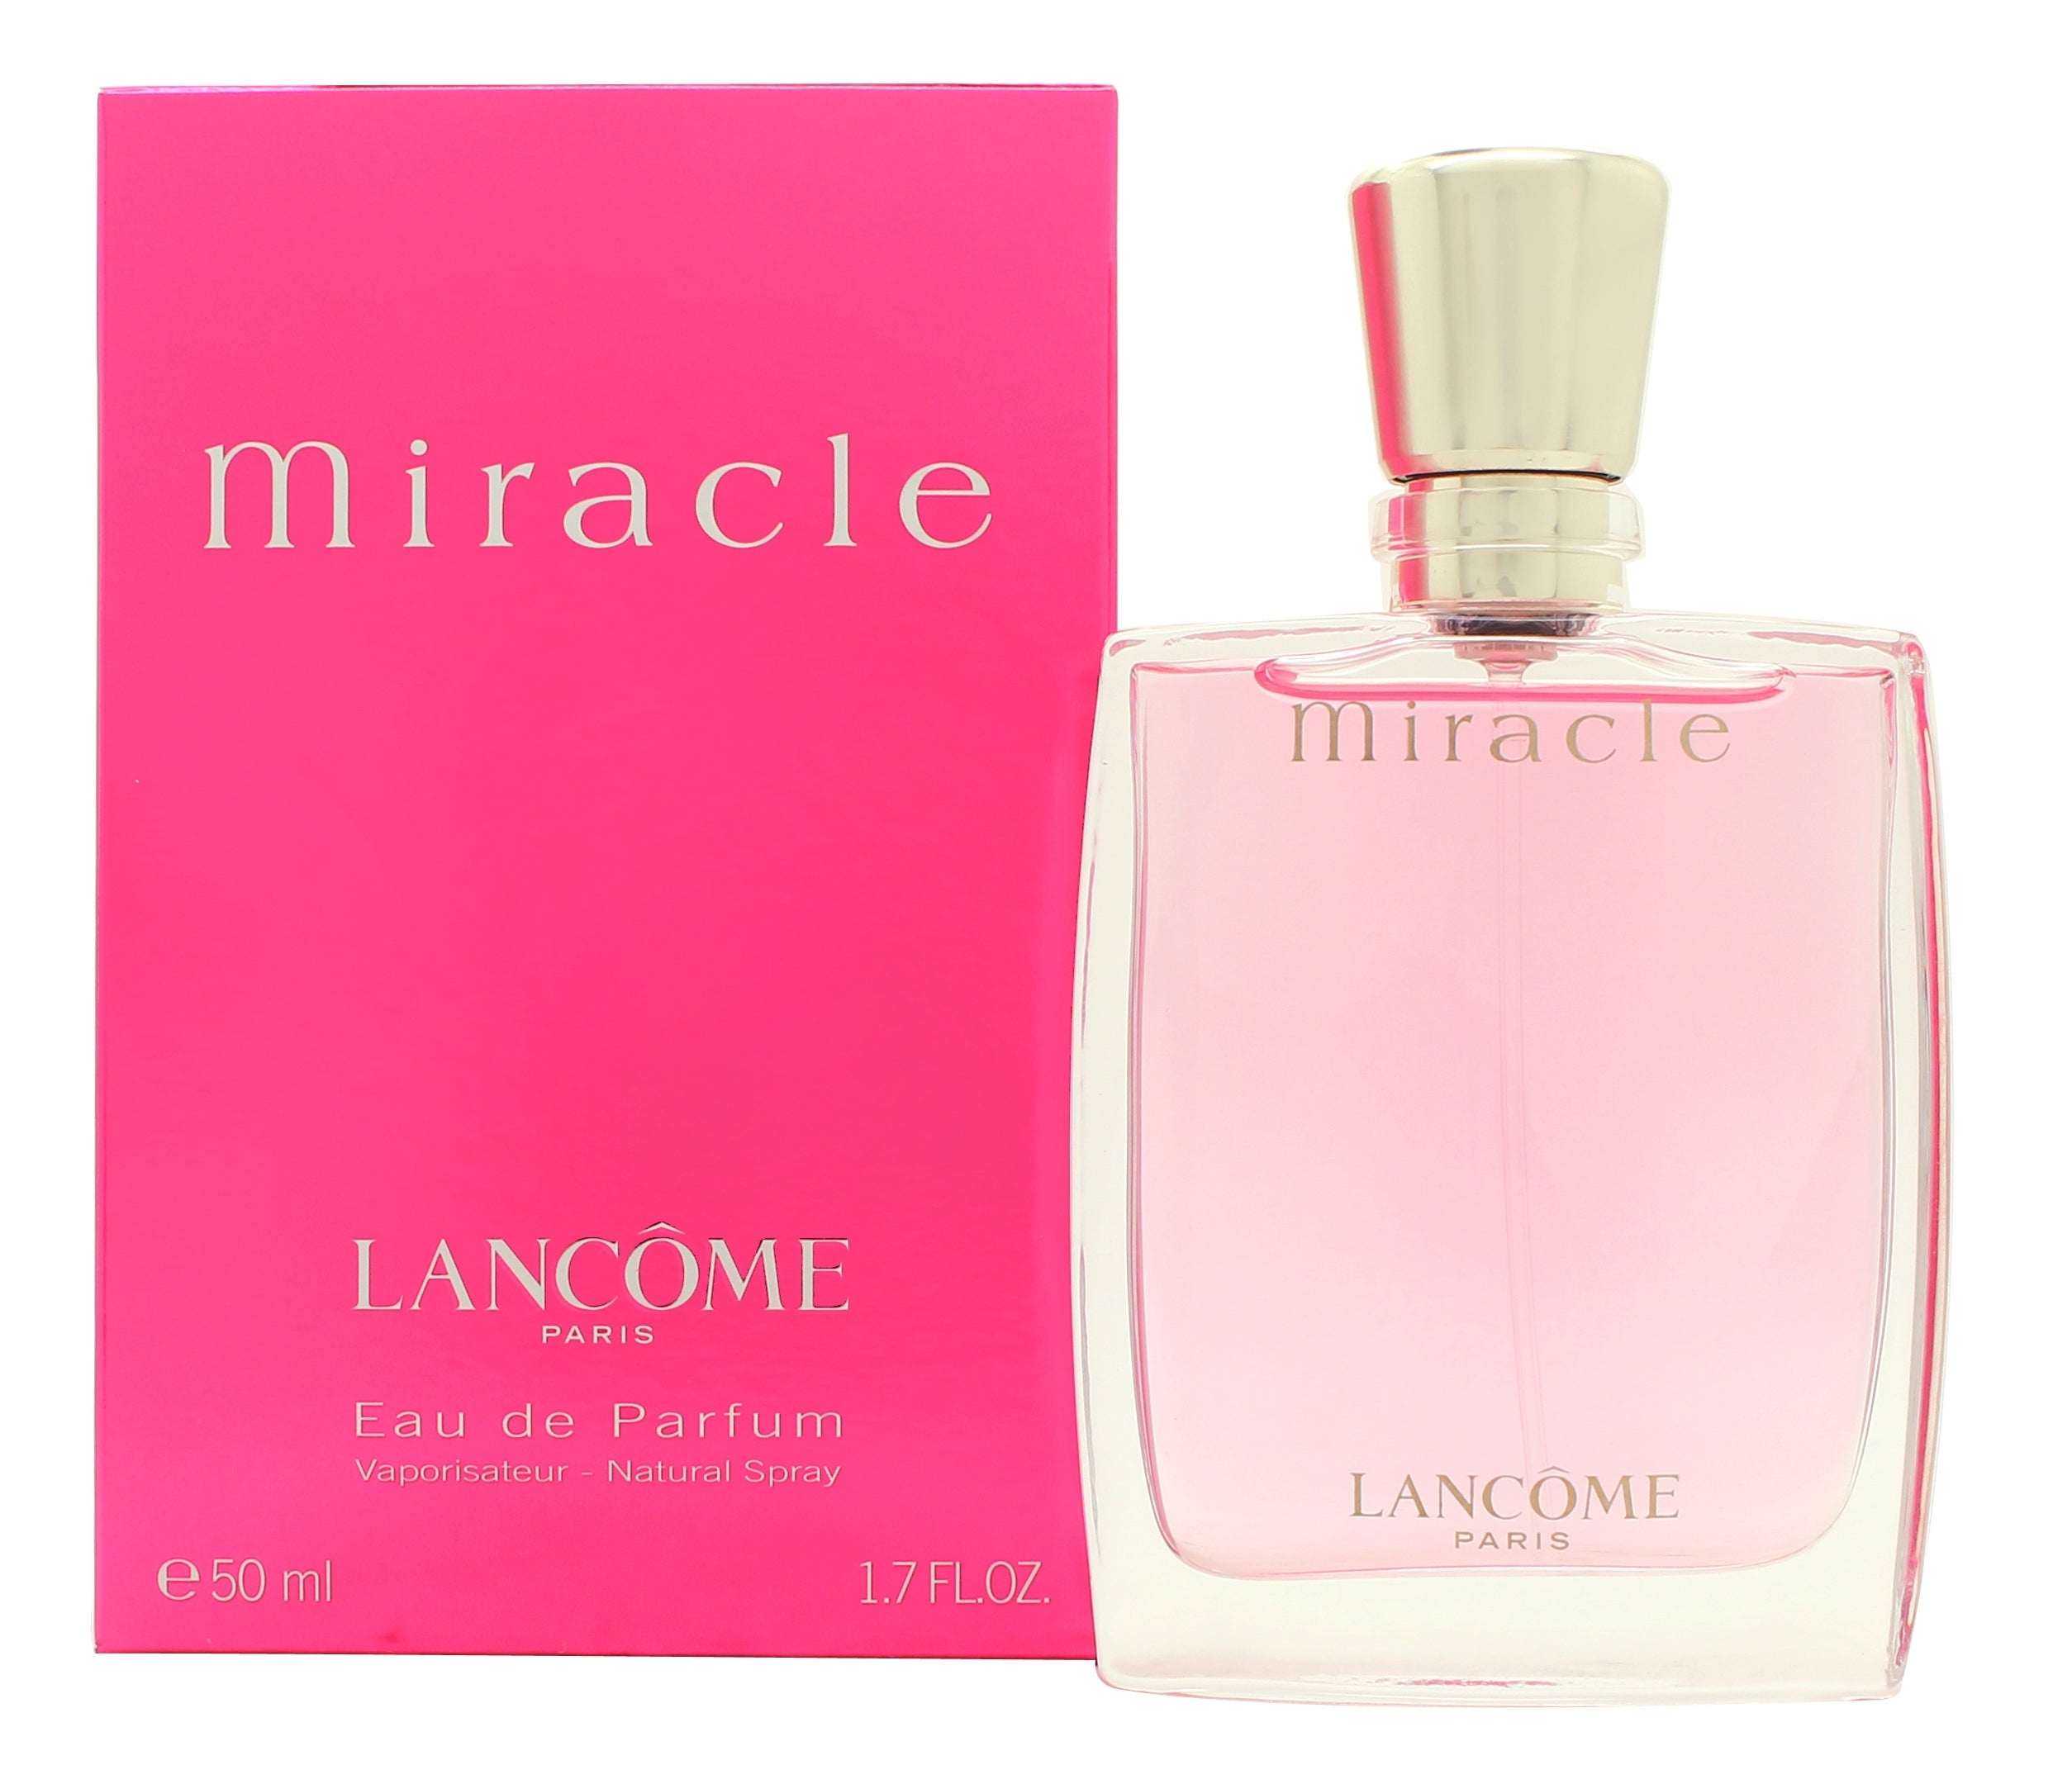 View Lancome Miracle Eau de Parfum 50ml Spray information